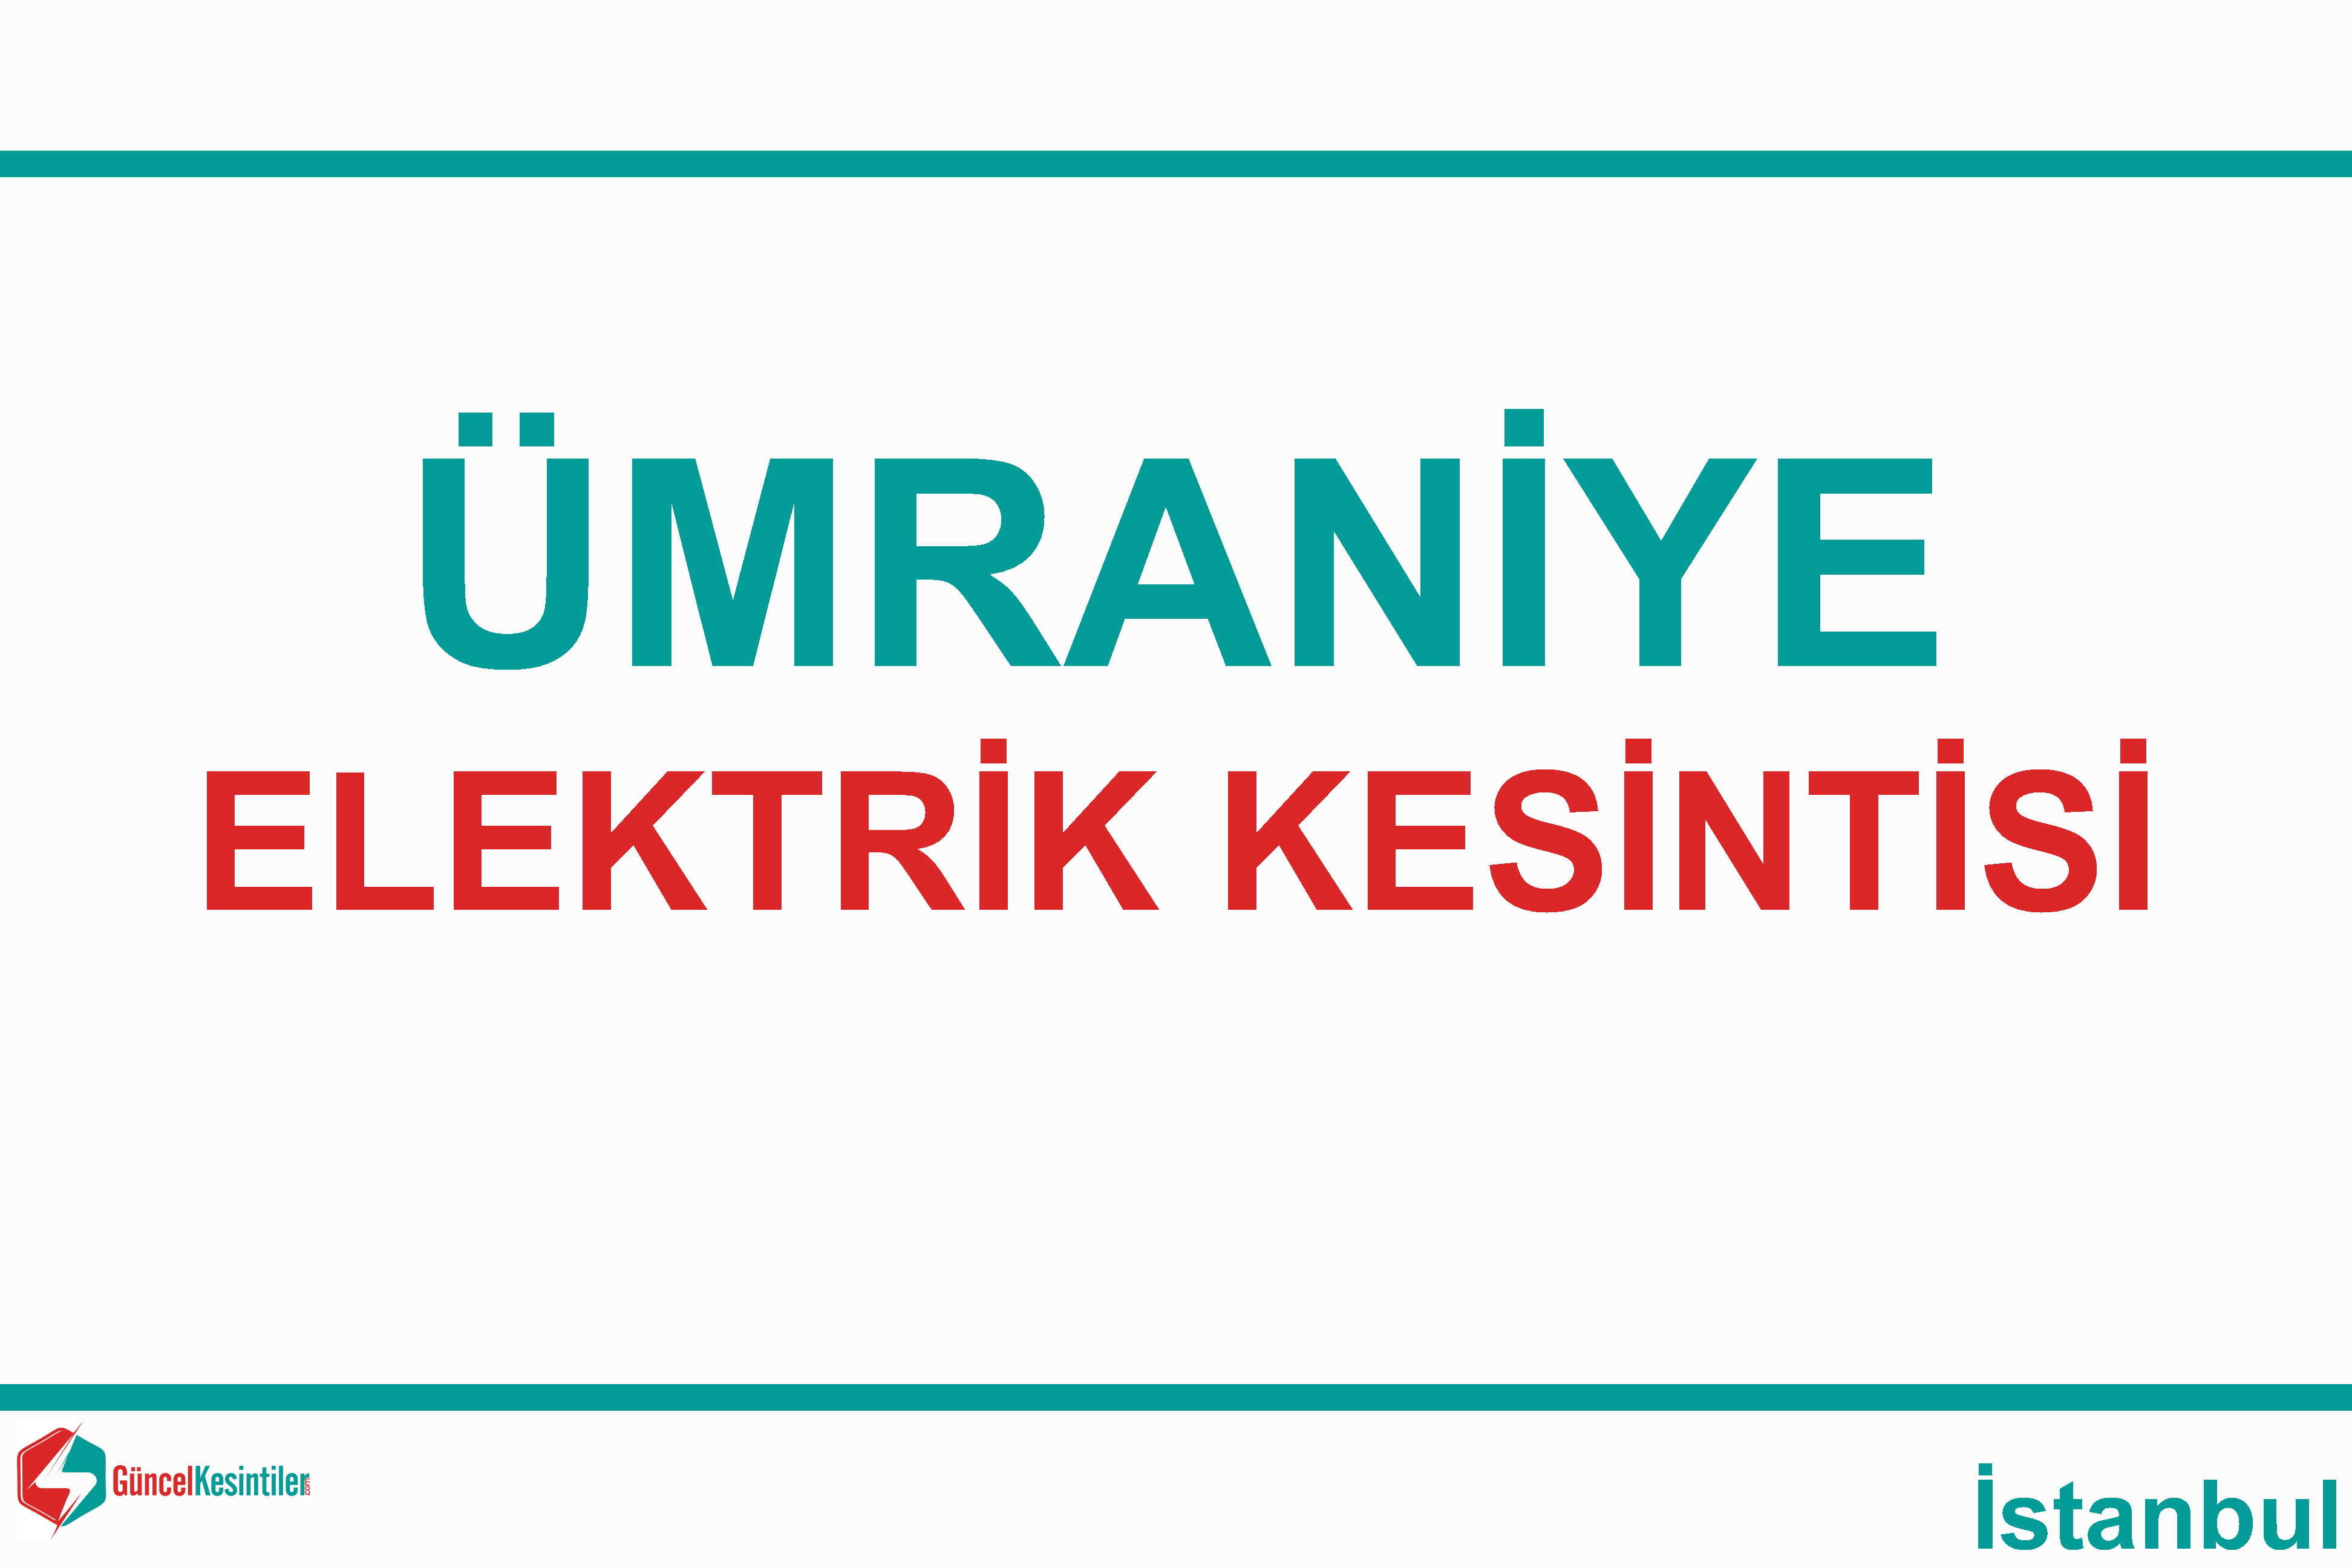 umraniye elektrik kesintisi listesi istanbul ayedas guncel kesinti bilgileri elektrik su